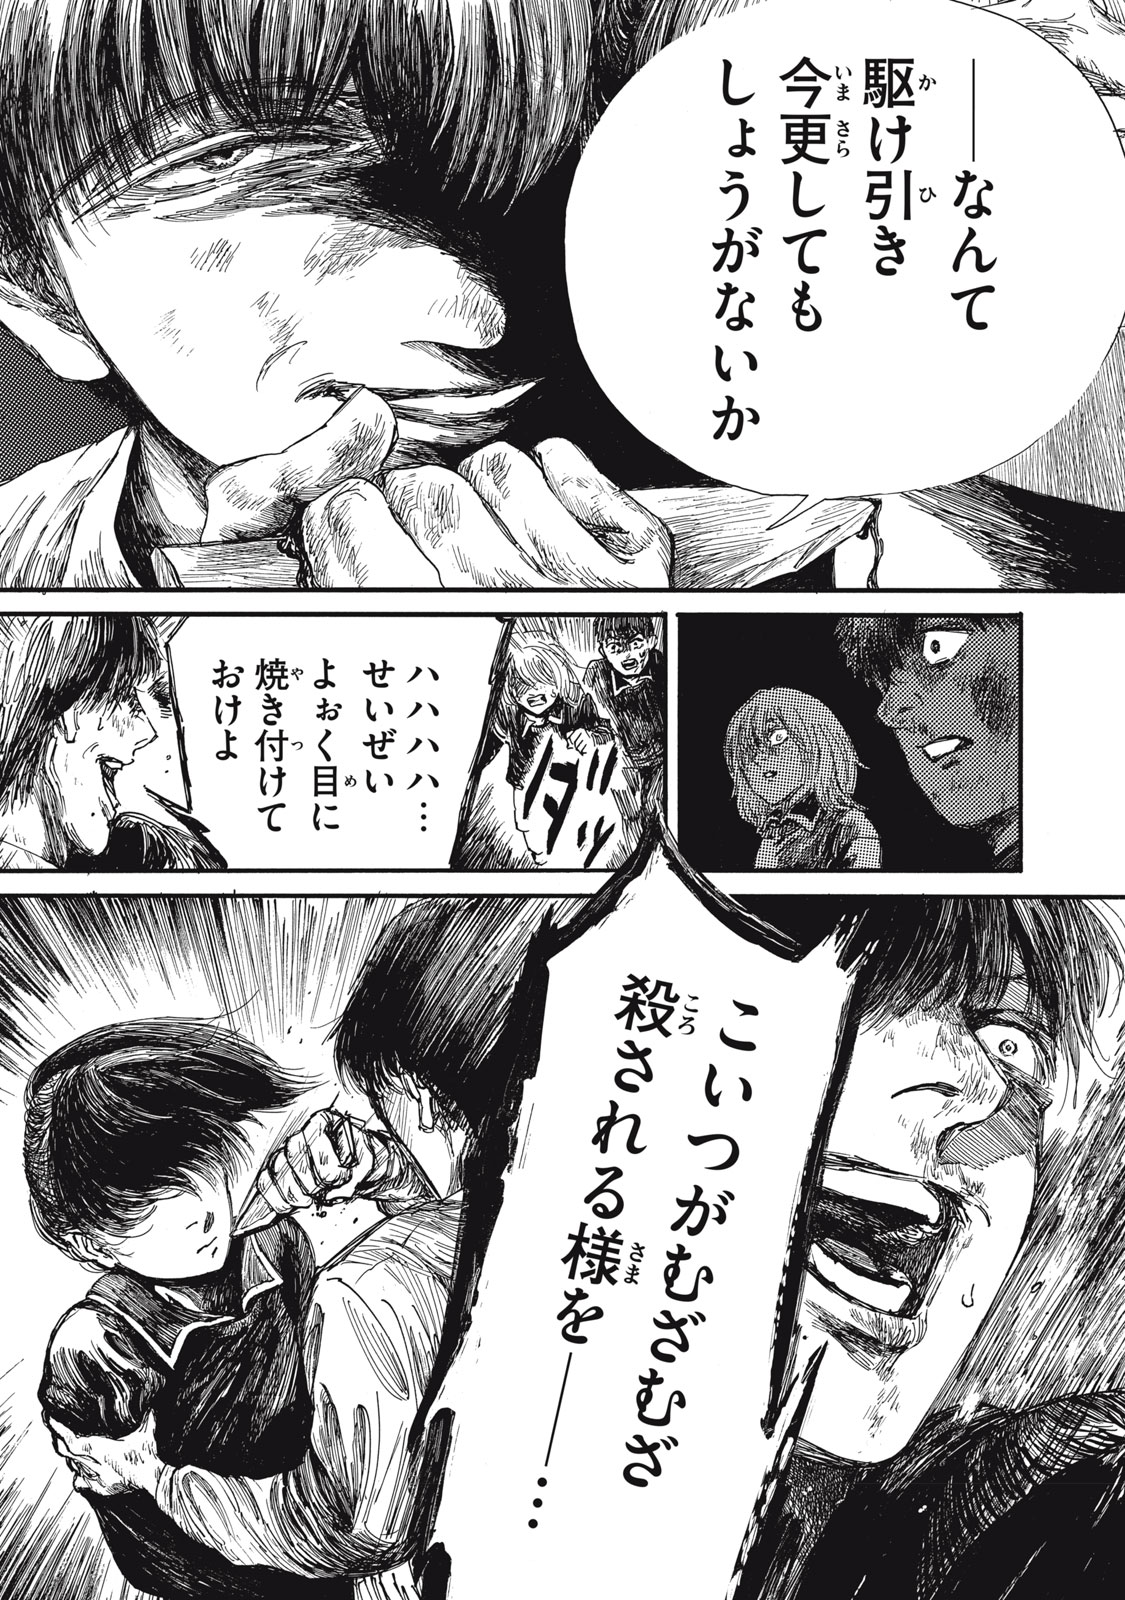 Watashi no Hara no Naka no Bakemono - Chapter 28 - Page 7